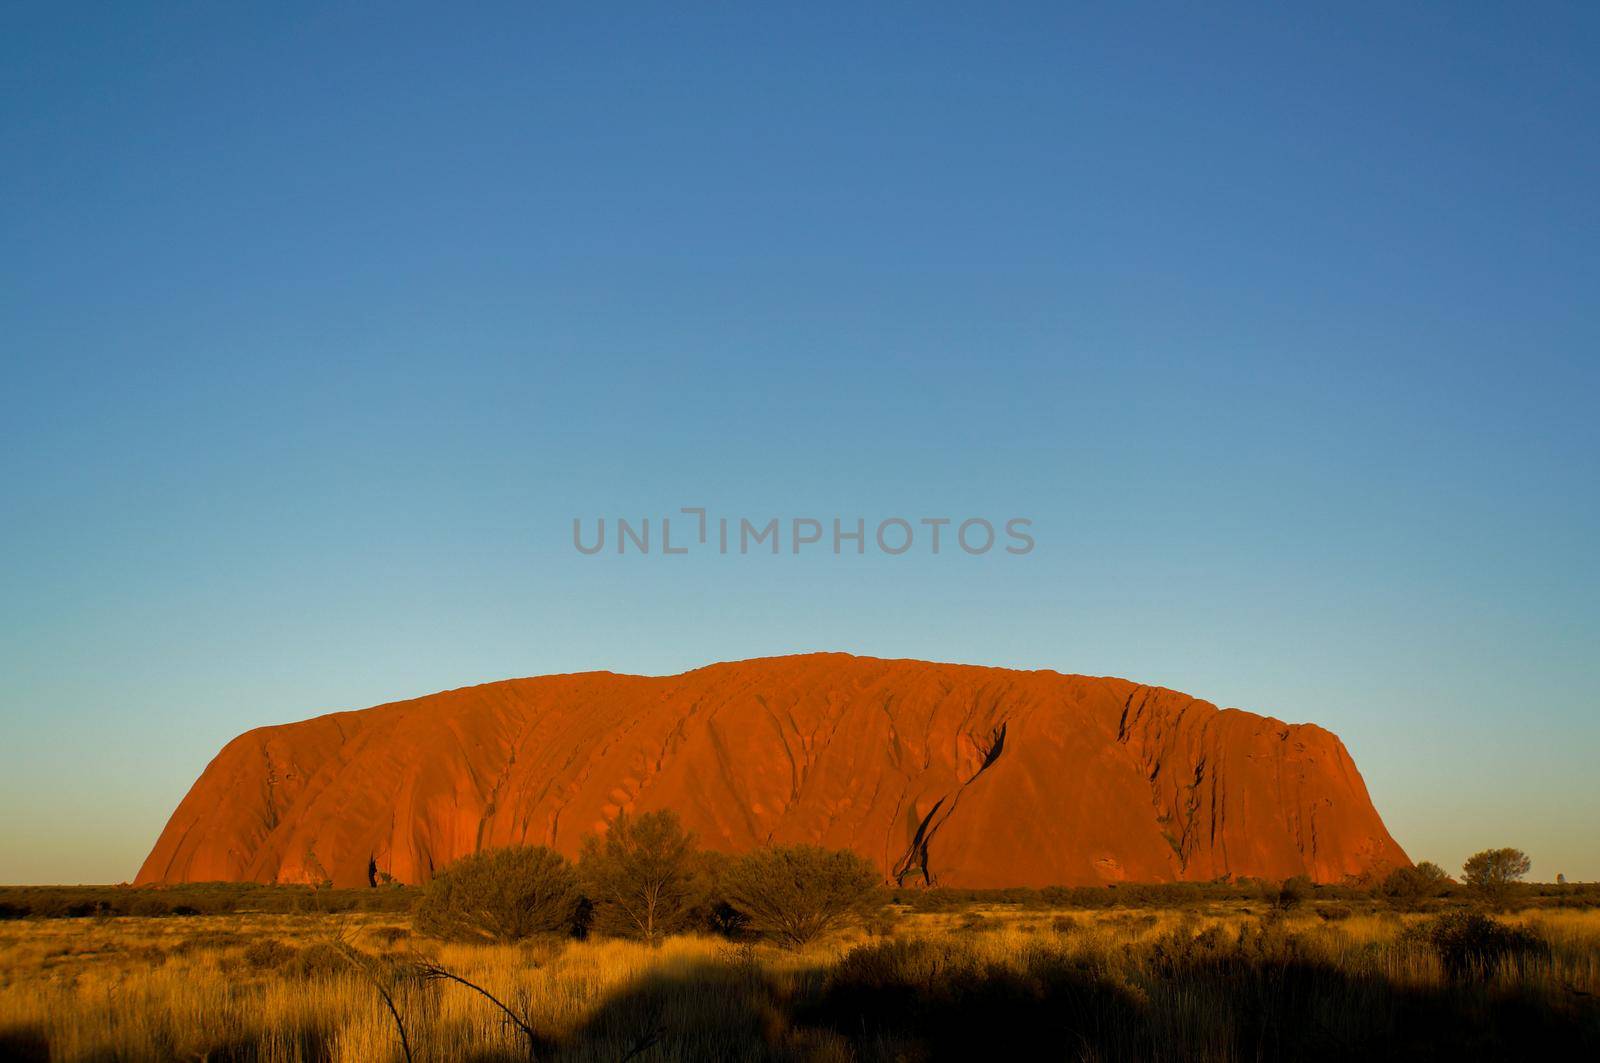 Sonnenaufgang am Uluru, Ayers Rock - Red Center, Australien by bettercallcurry